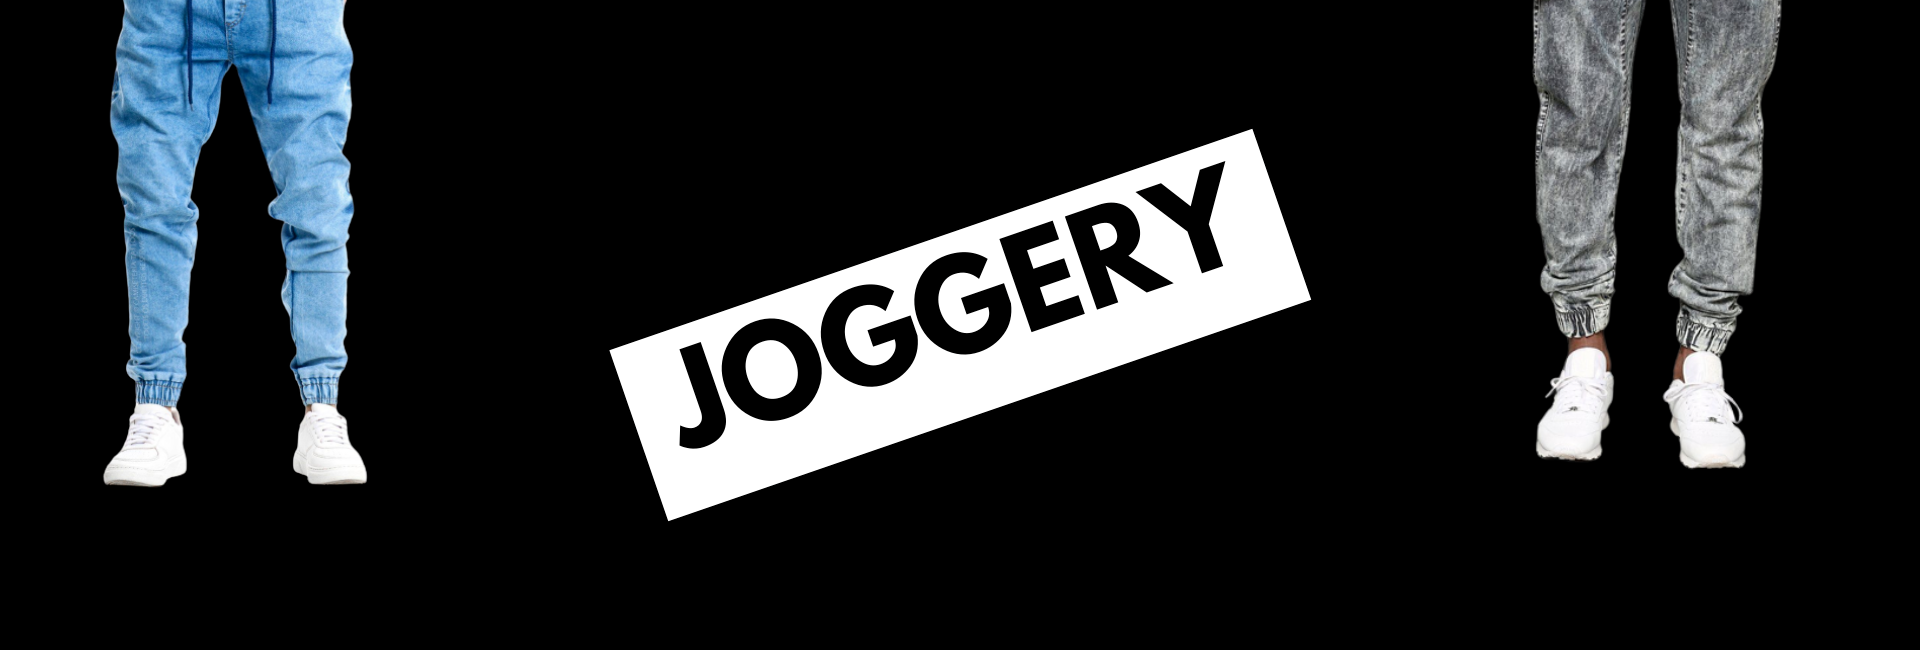 Joggery